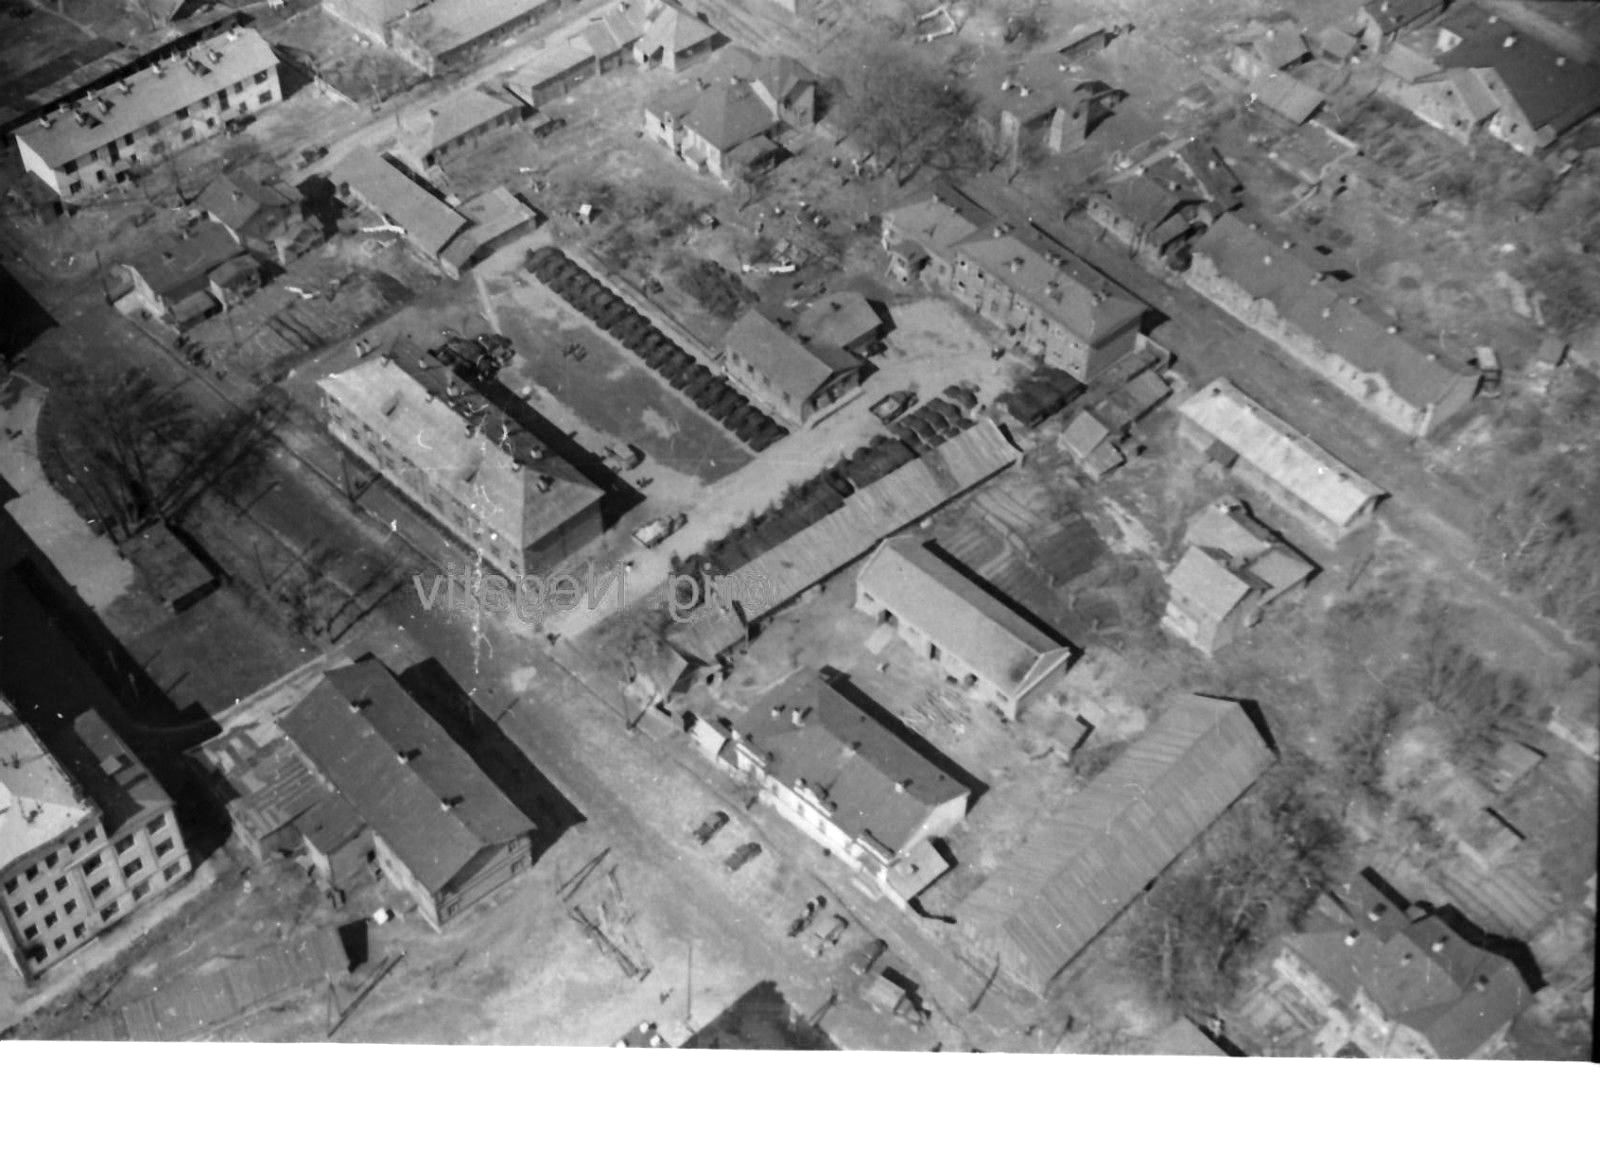 Foto 2 WK, orig. negativ, Ostfront,Smolensk, Luftaufnahme,Kaserne, WH Fahrzeug.jpg